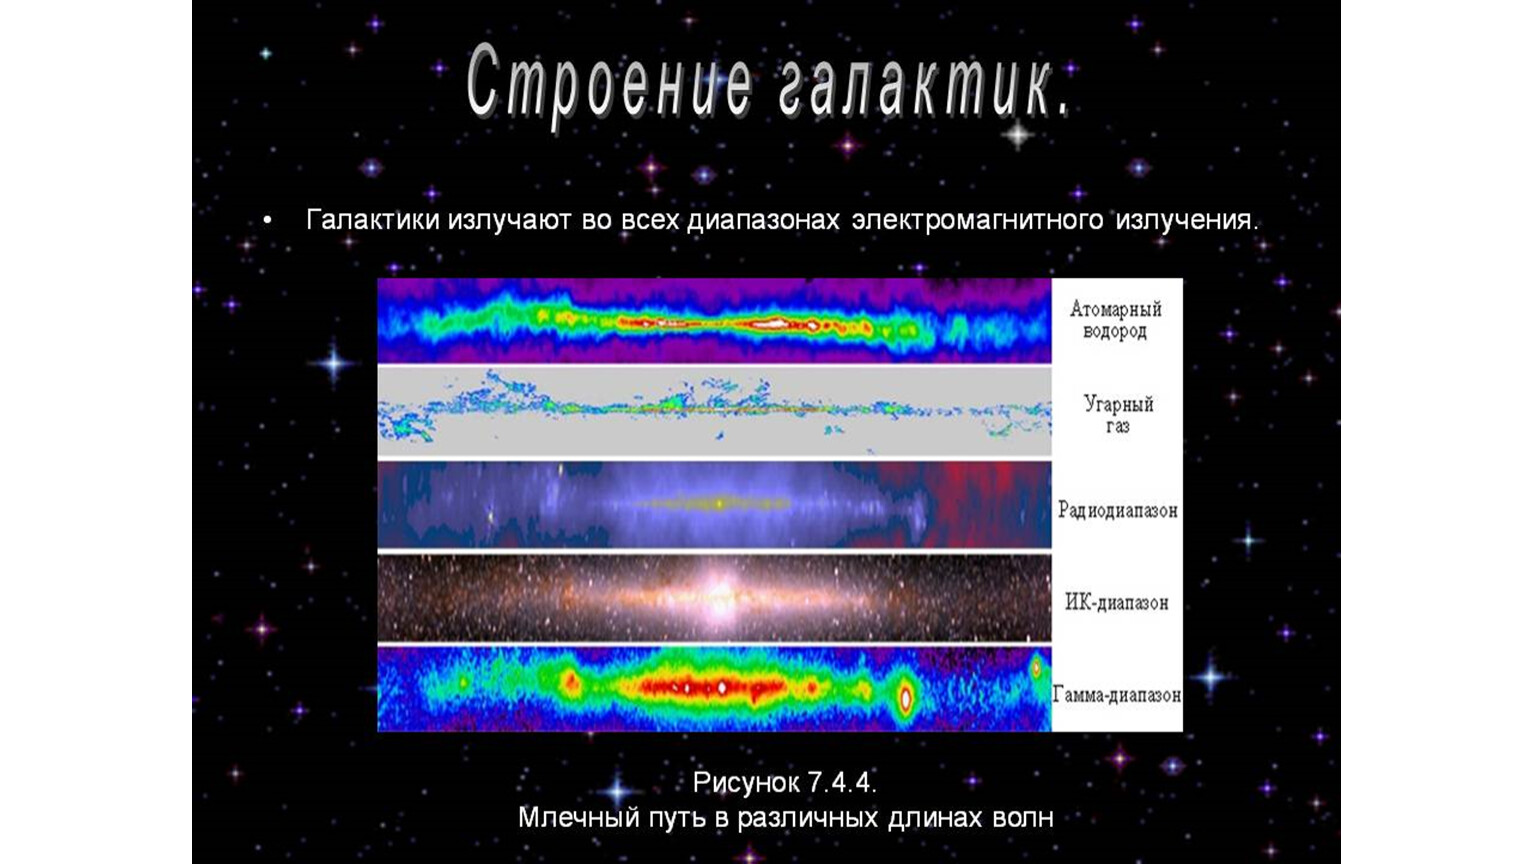 Какие источники радиоизлучения известны в нашей галактике. Радиоизлучение Галактики Млечный путь. Млечный путь в различных диапазонах длин волн. Электромагнитное излучение Млечного пути. Галактика в разных диапазонах излучения.